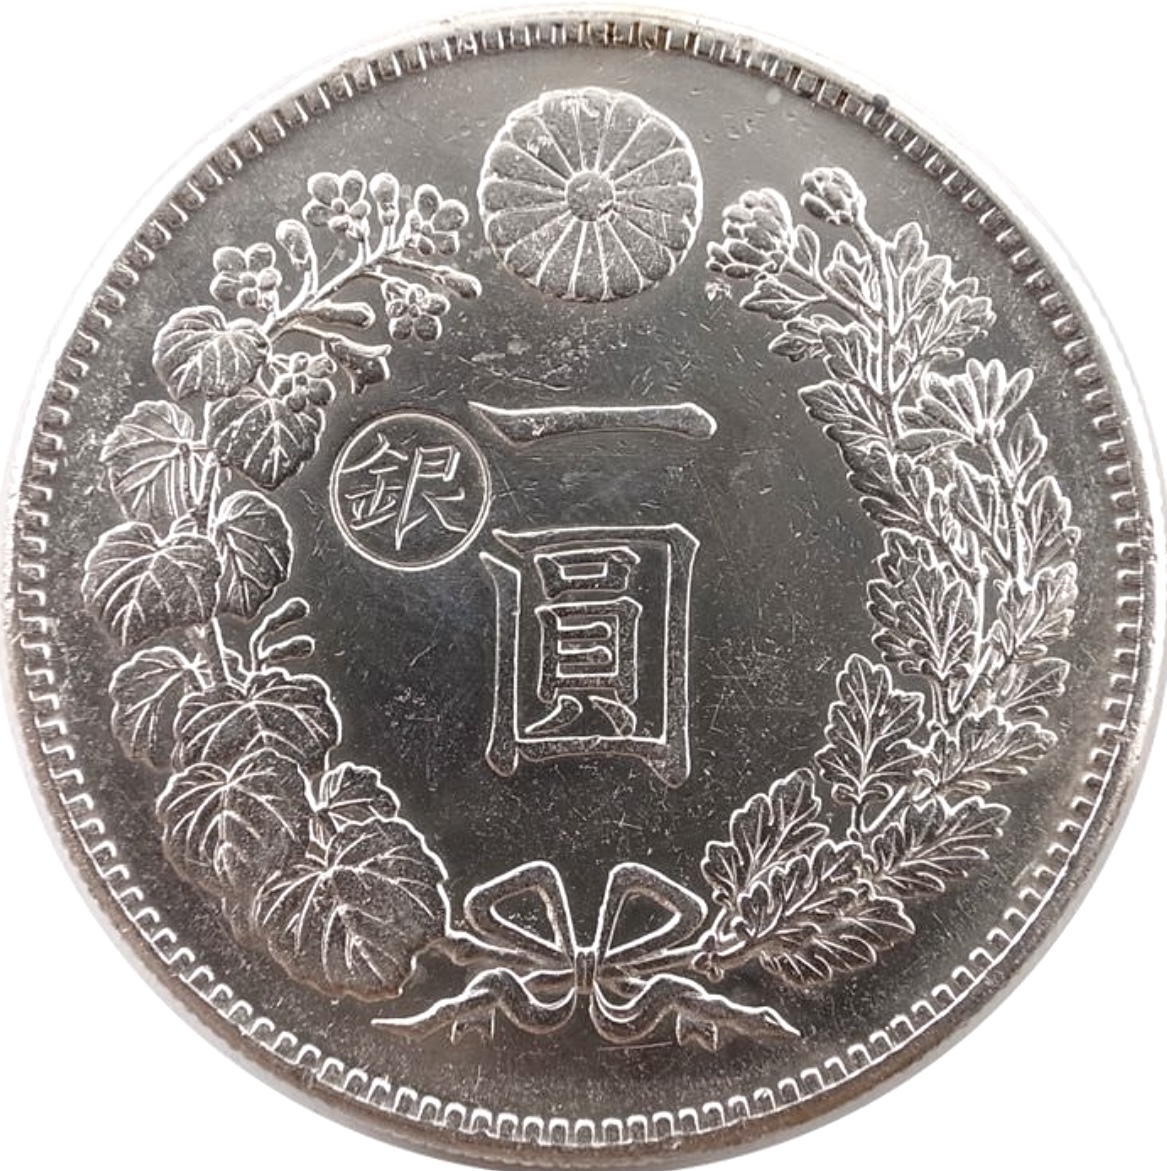 丸銀 一圓銀貨でも海外で使えるけど国内では使えない貨幣の刻印